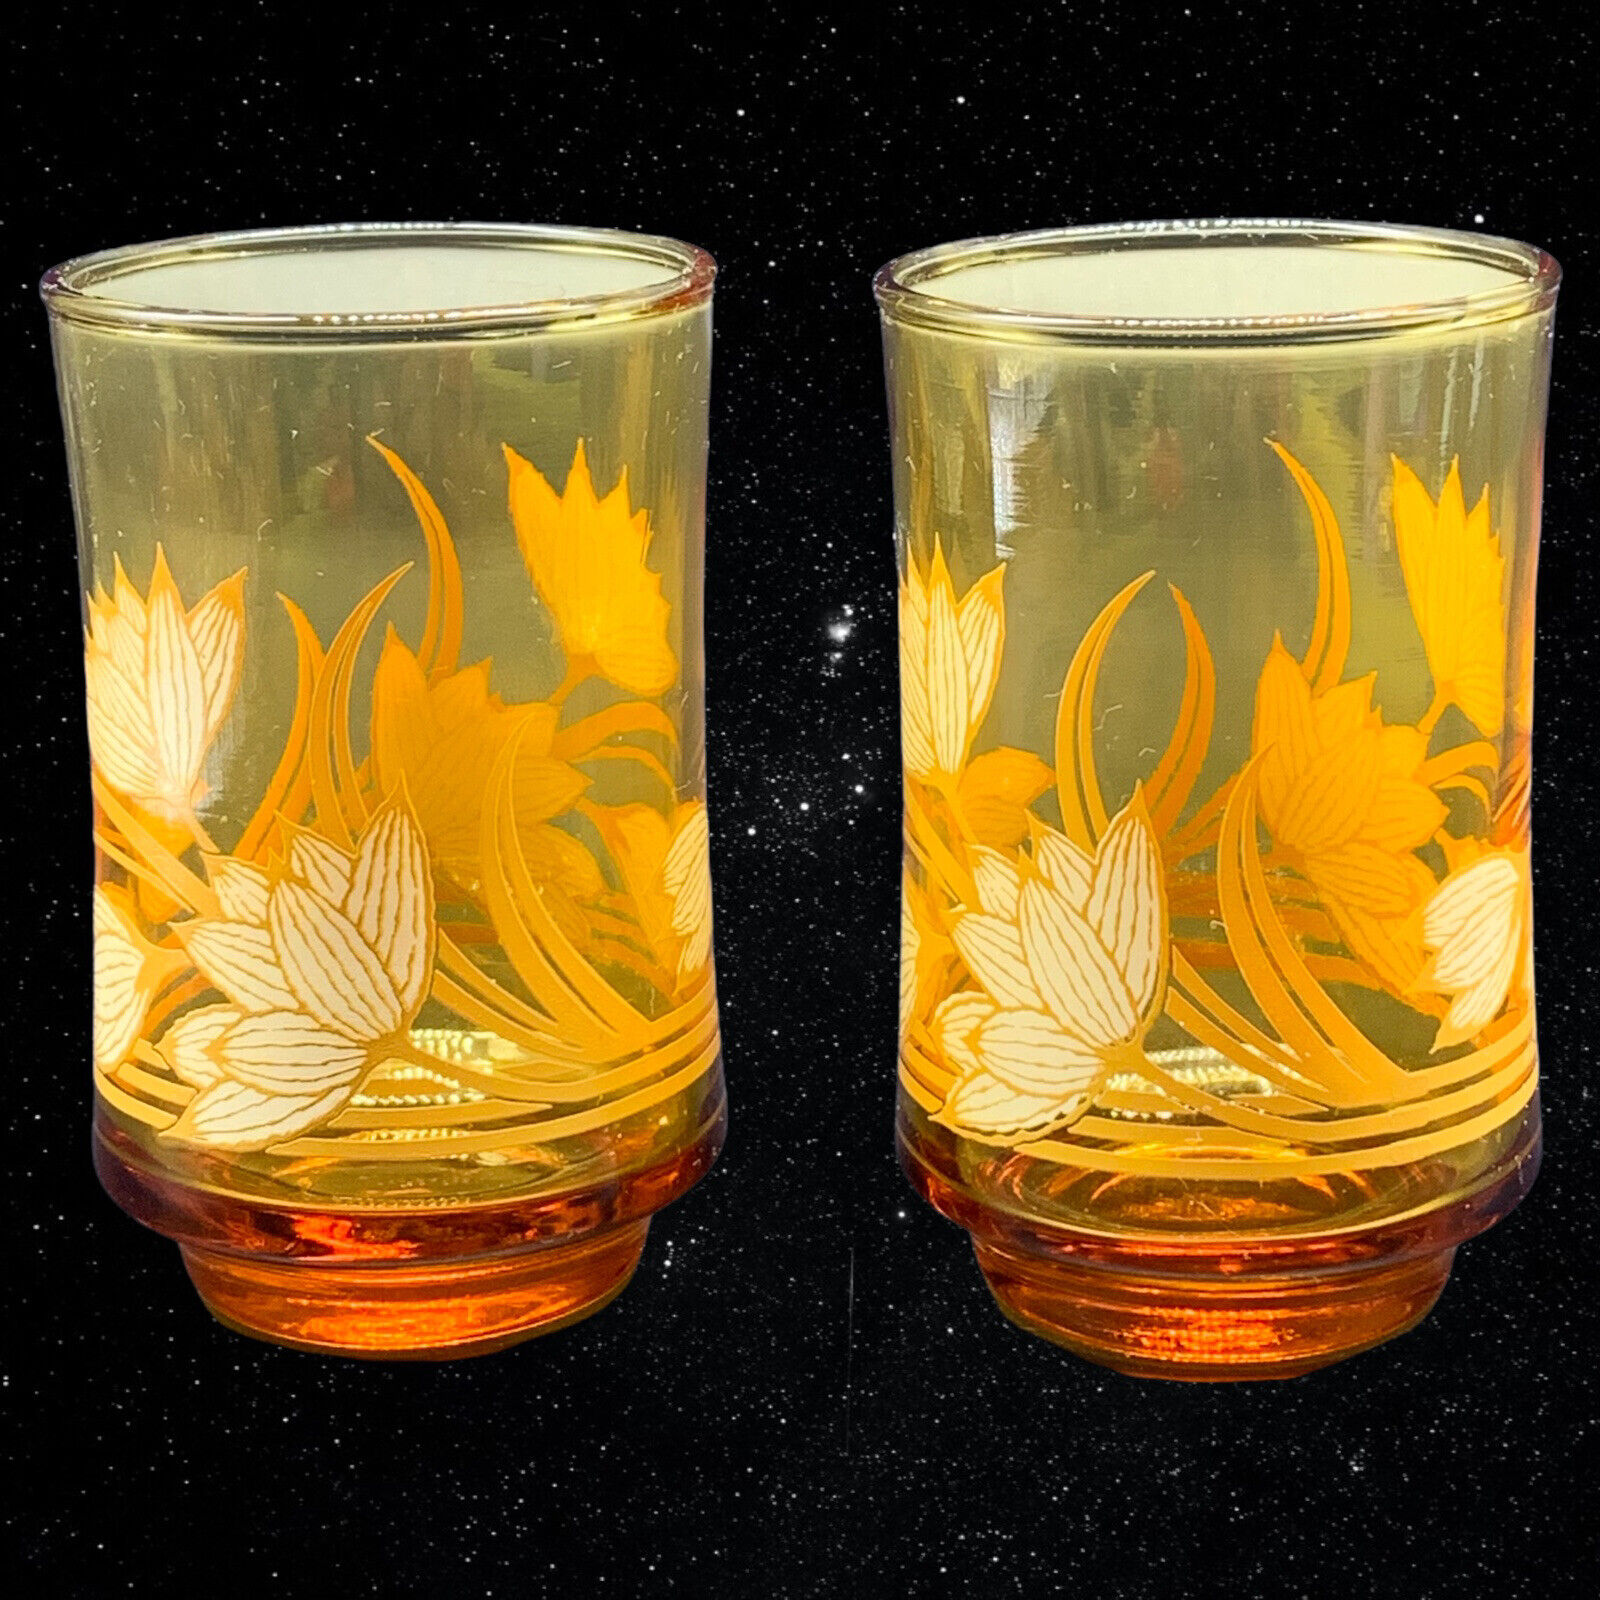 Set Of 2 Libbey Amber Juice Glasses Floral Design 3.75”T 2.75”W